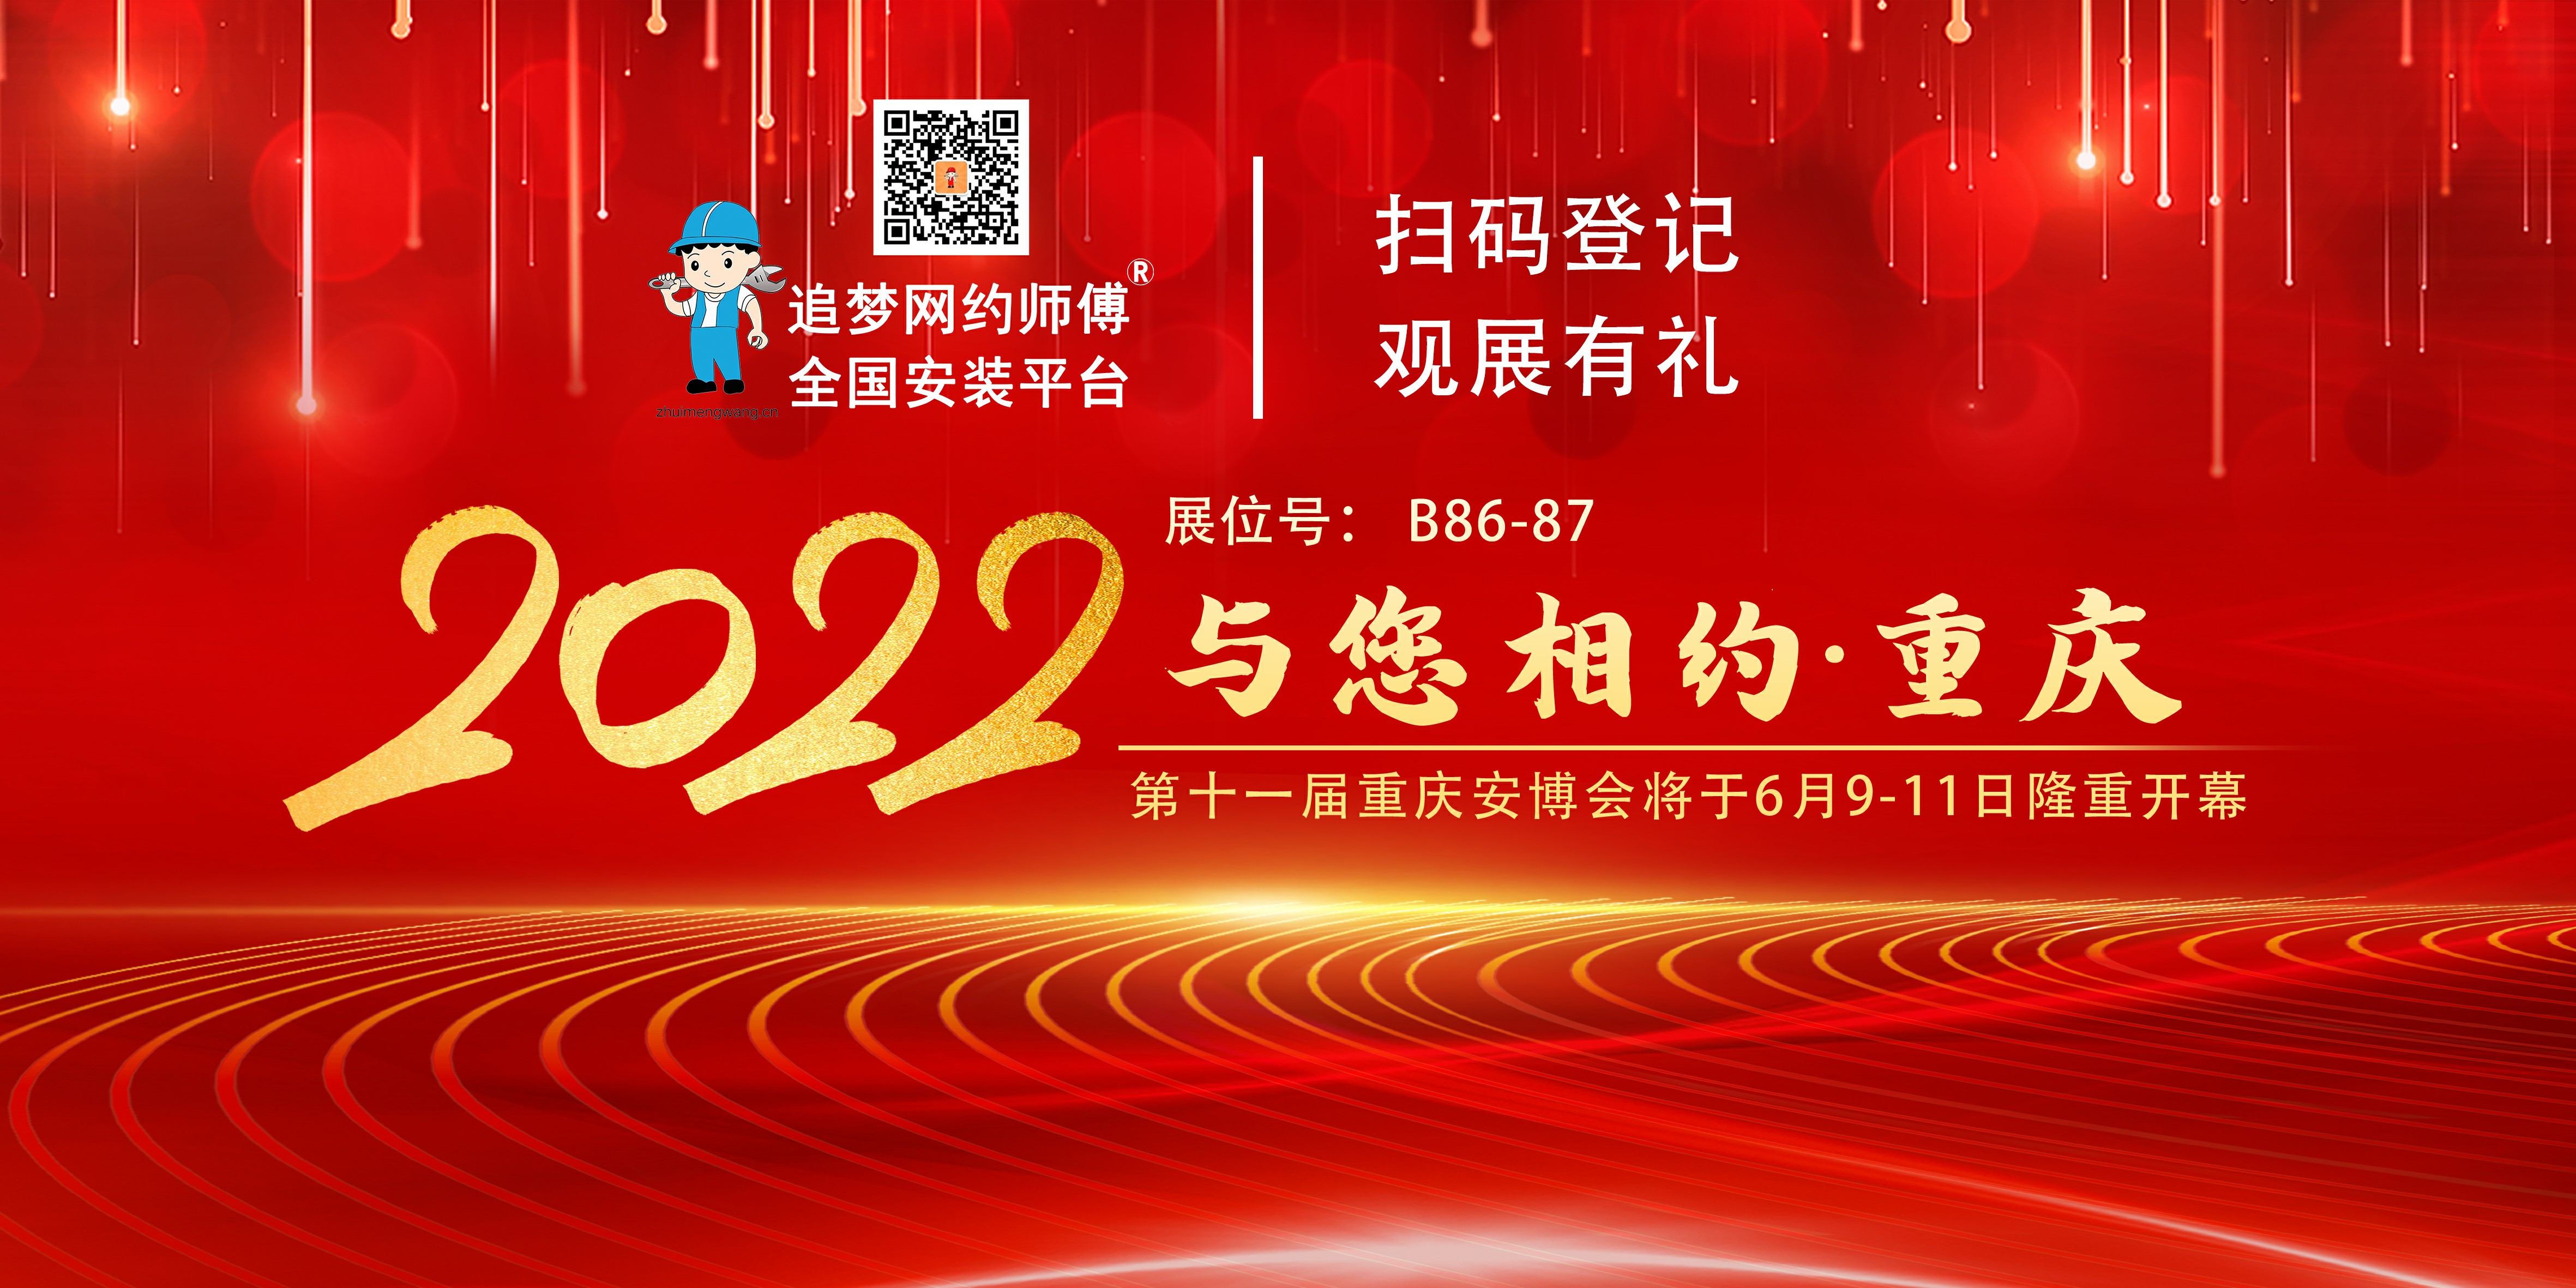 2022 第十一届重庆安博会将在重庆隆重开幕